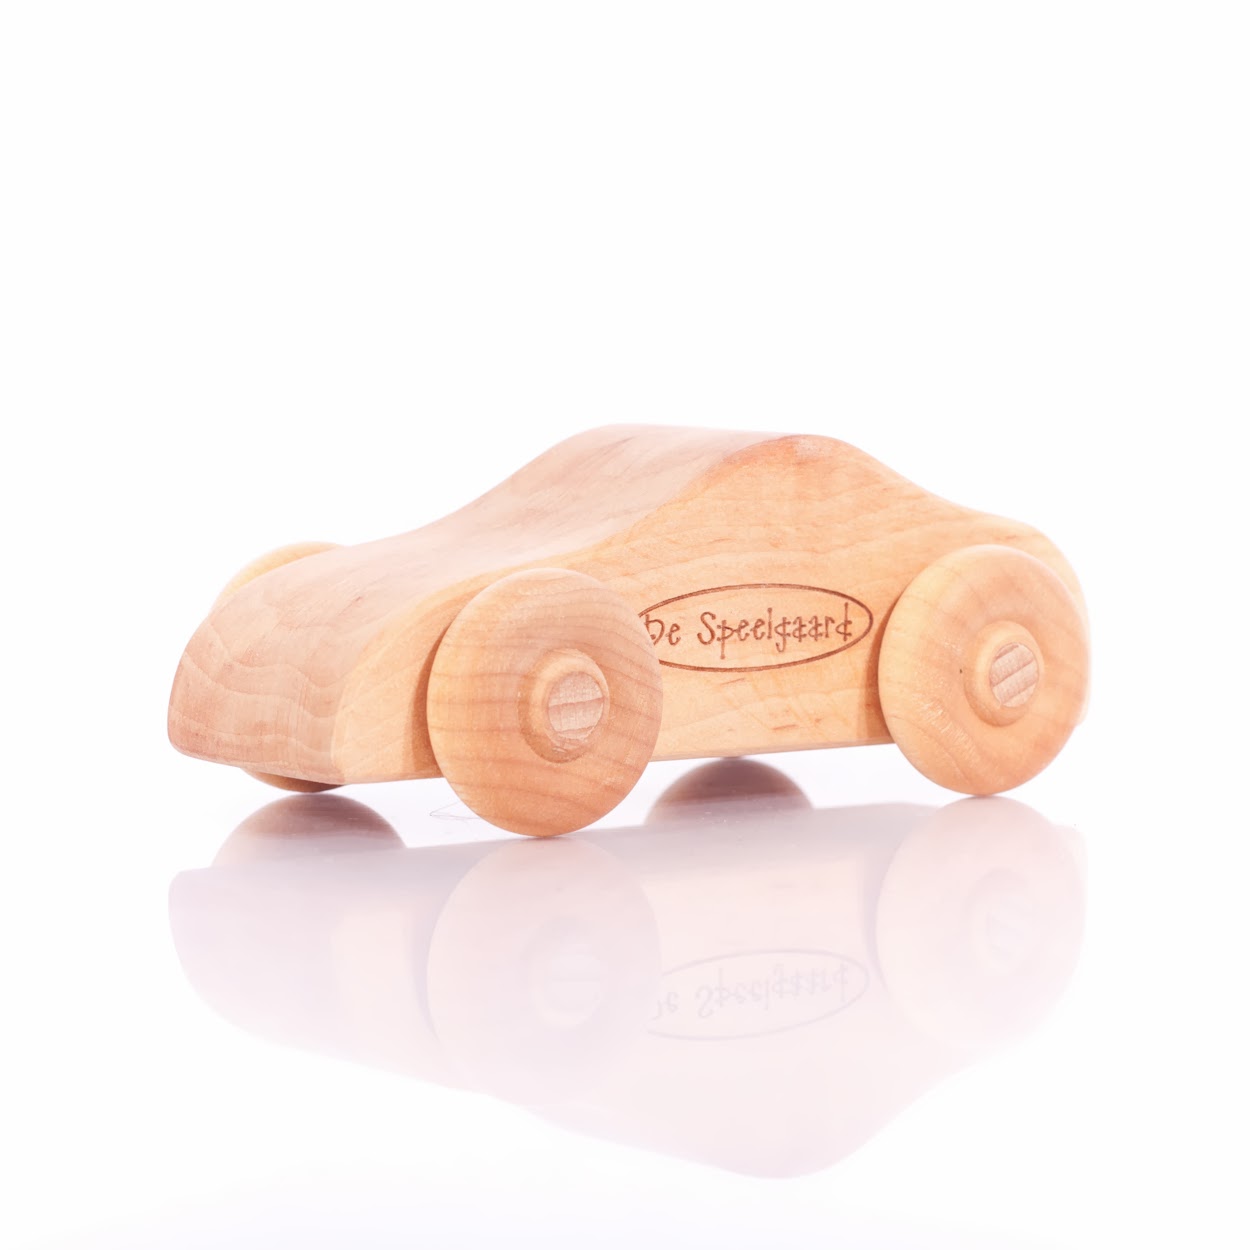 terug Naleving van Onrustig De 10 beste sinterklaascadeautjes van hout - Houtspel - Duurzaam houten  speelgoed